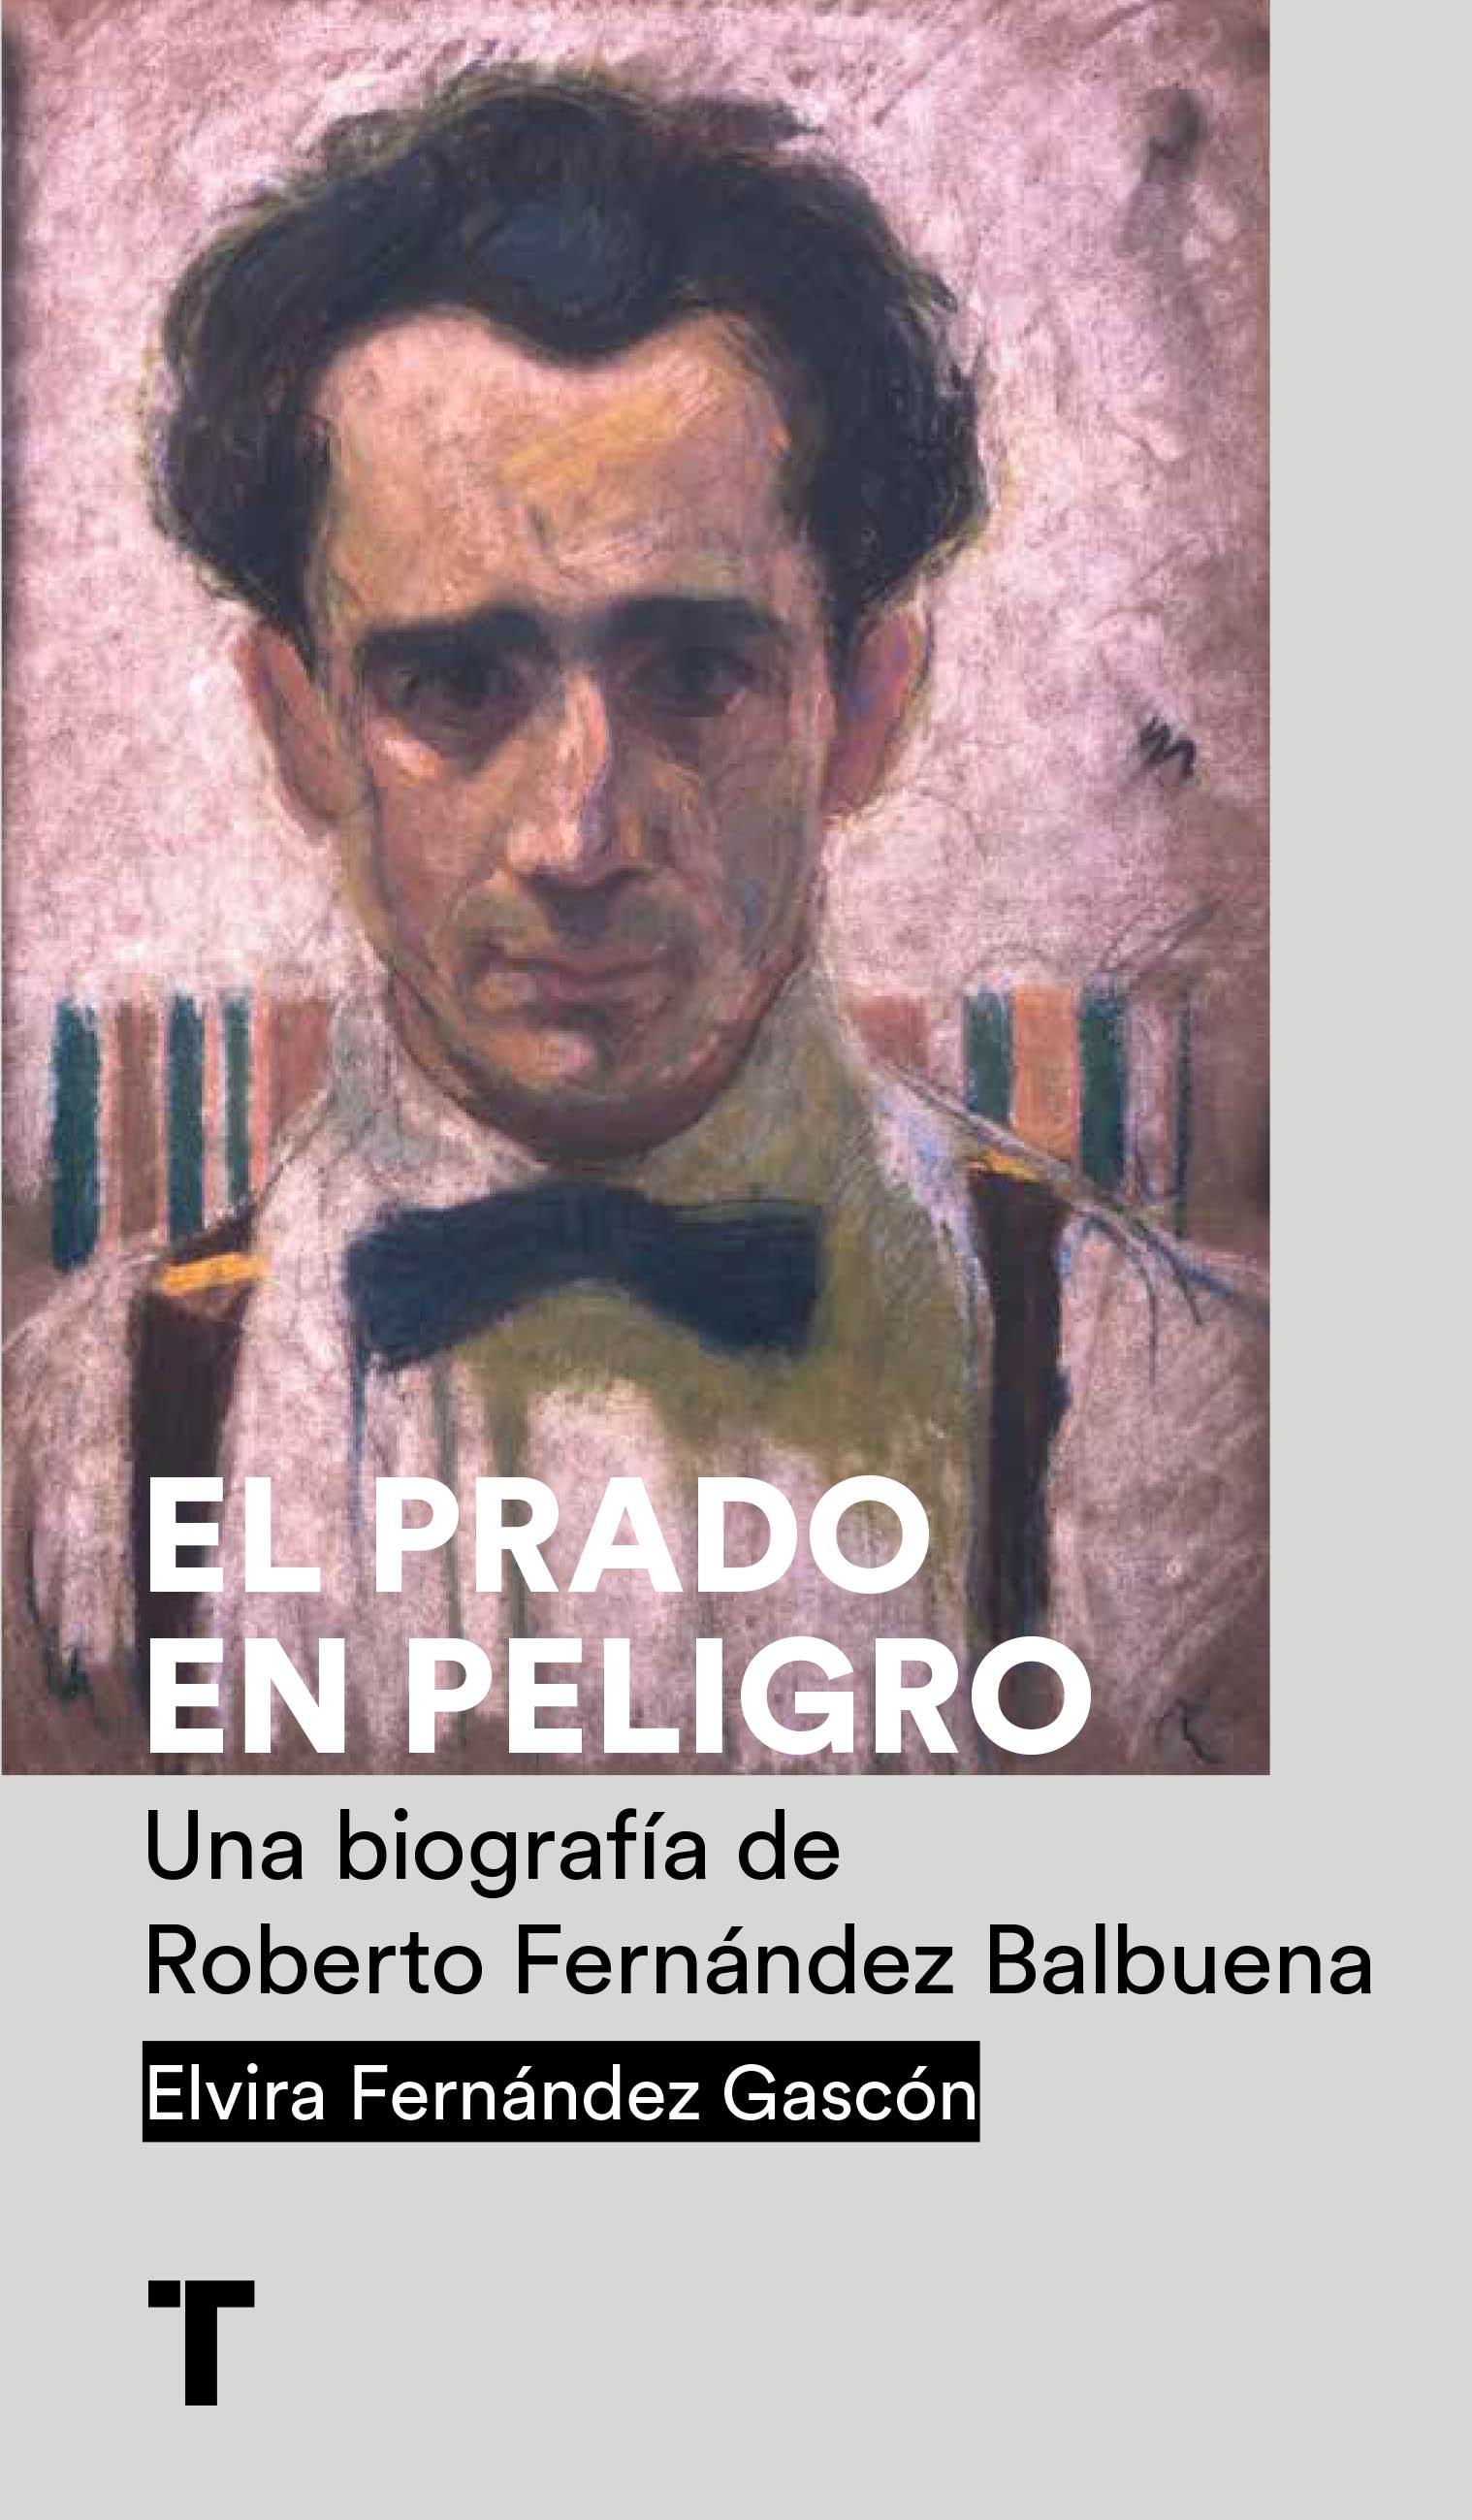 Prado en peligro, El "Una biografía de Roberto Fernández Balbuena"